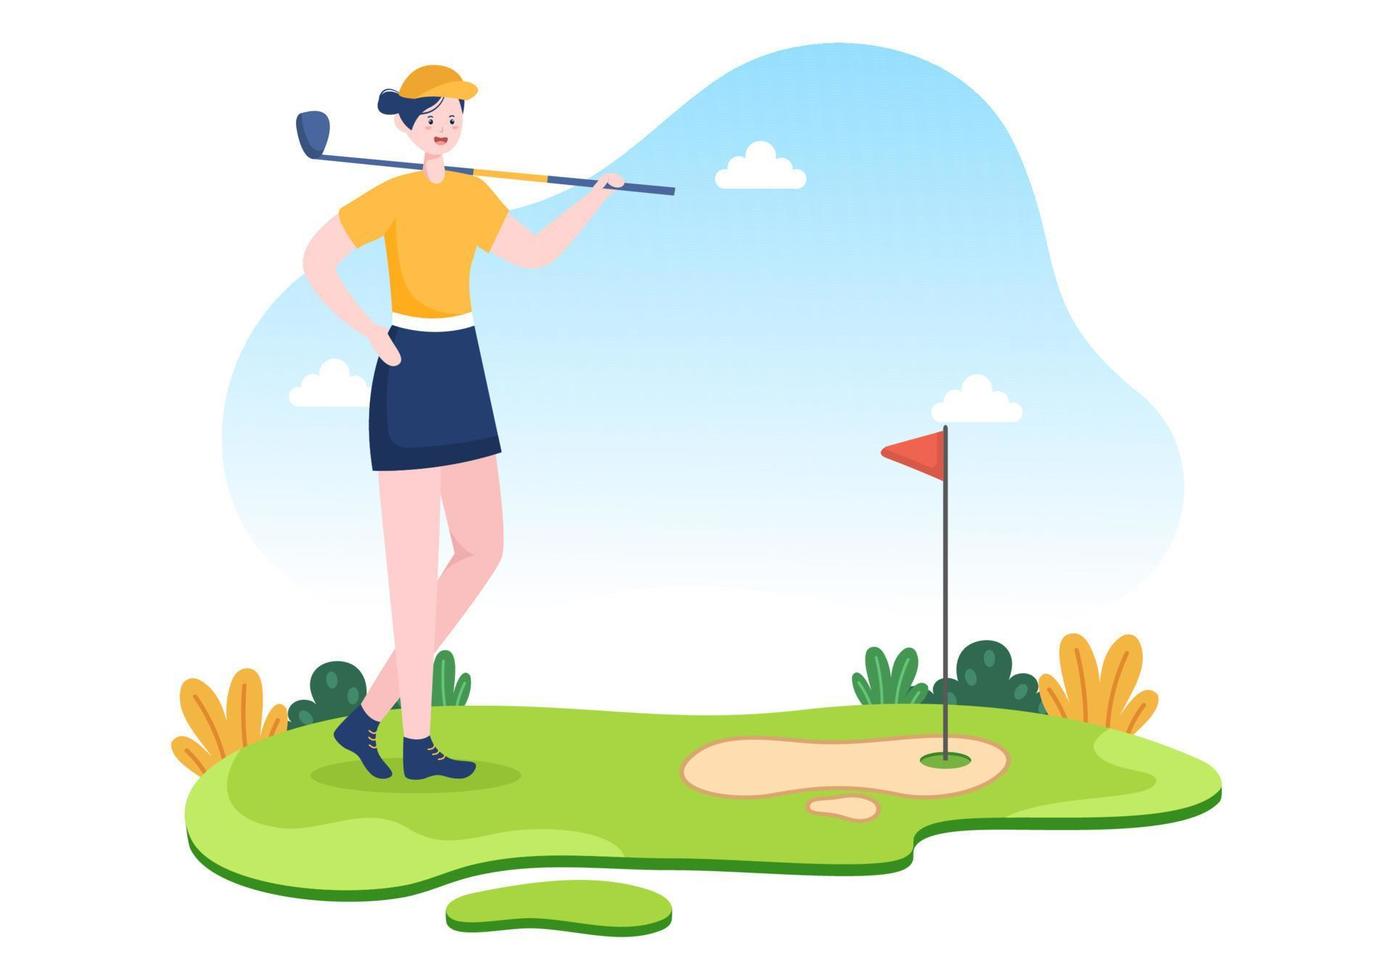 giocare a golf con bandiere, terreno sabbioso, bunker di sabbia e attrezzature su piante verdi da cortile all'aperto nell'illustrazione piana del fondo del fumetto vettore